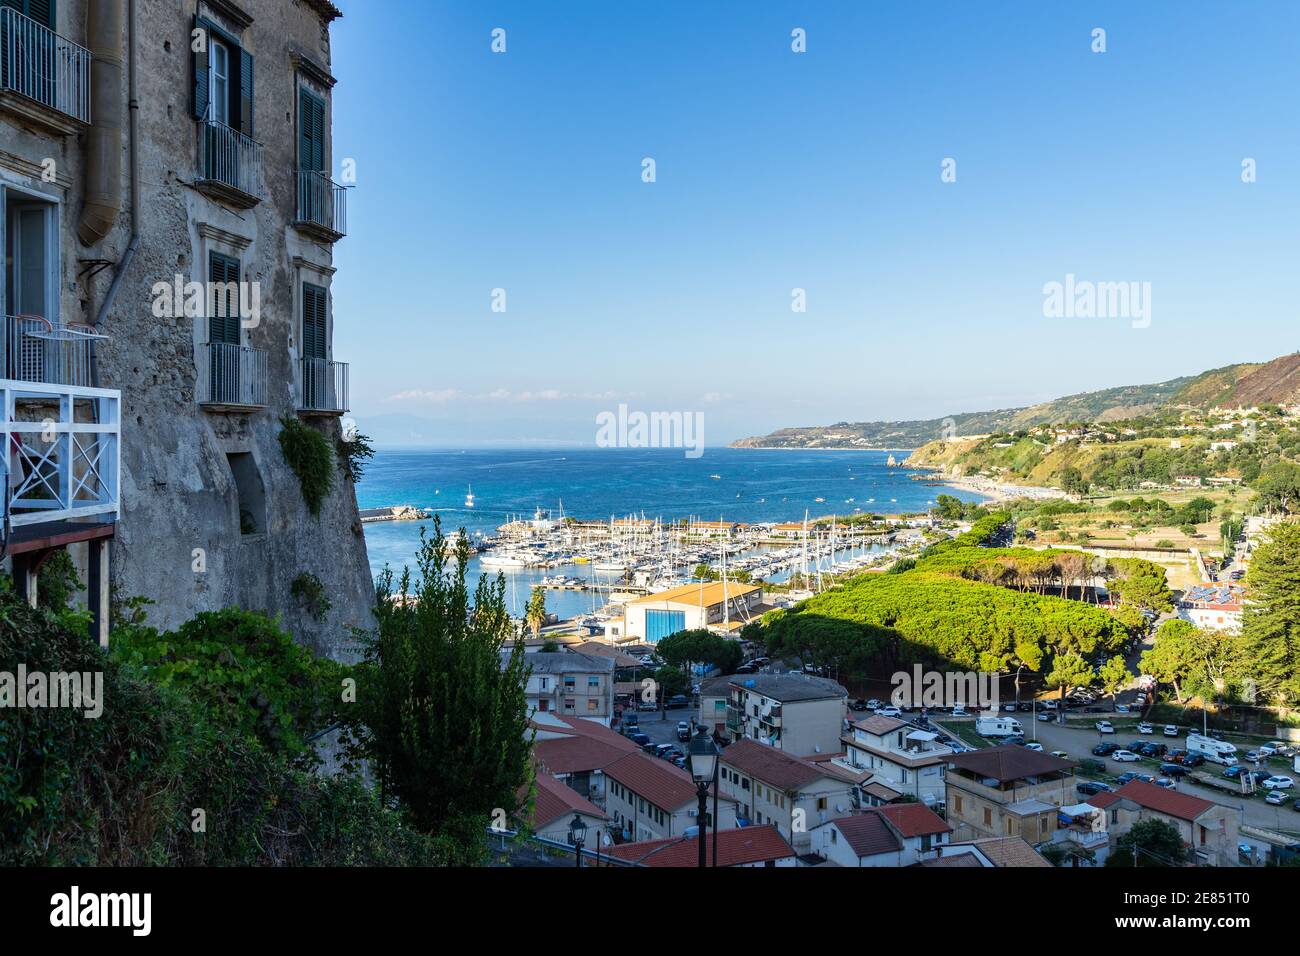 El puerto de Tropea visto entre los edificios antiguos del centro histórico, Calabria, al sur de Italia Foto de stock